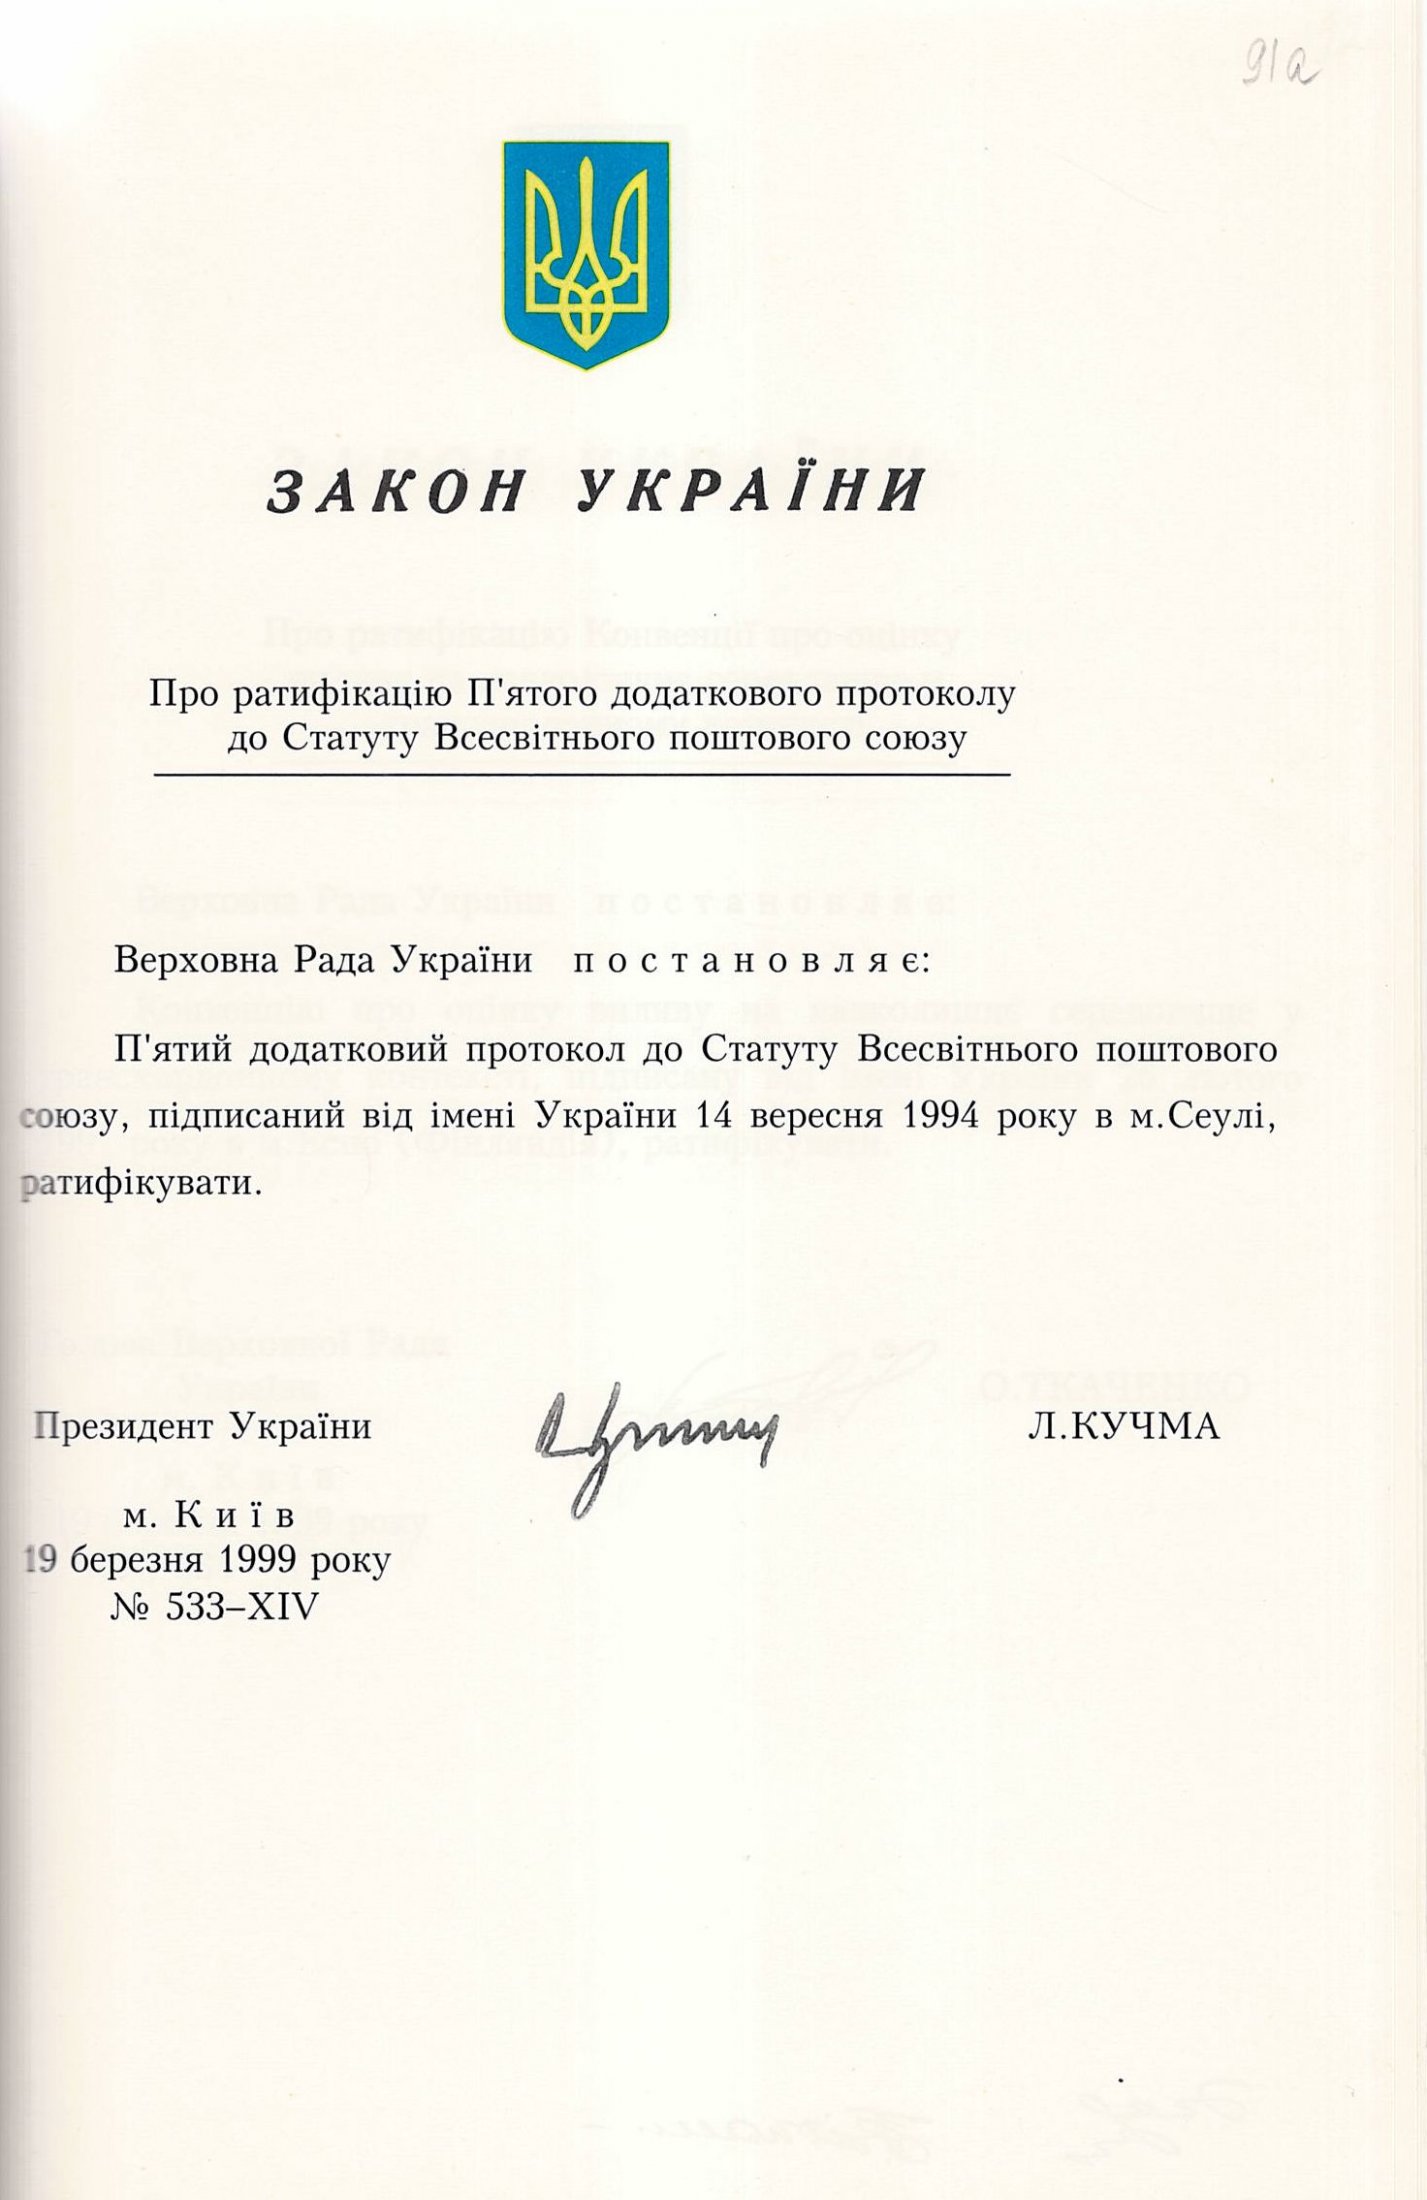 Закон України № 533-ХІV «Про ратифікацію П'ятого додаткового протоколу до Статуту Всесвітнього поштового союзу». 19 березня 1999 р.